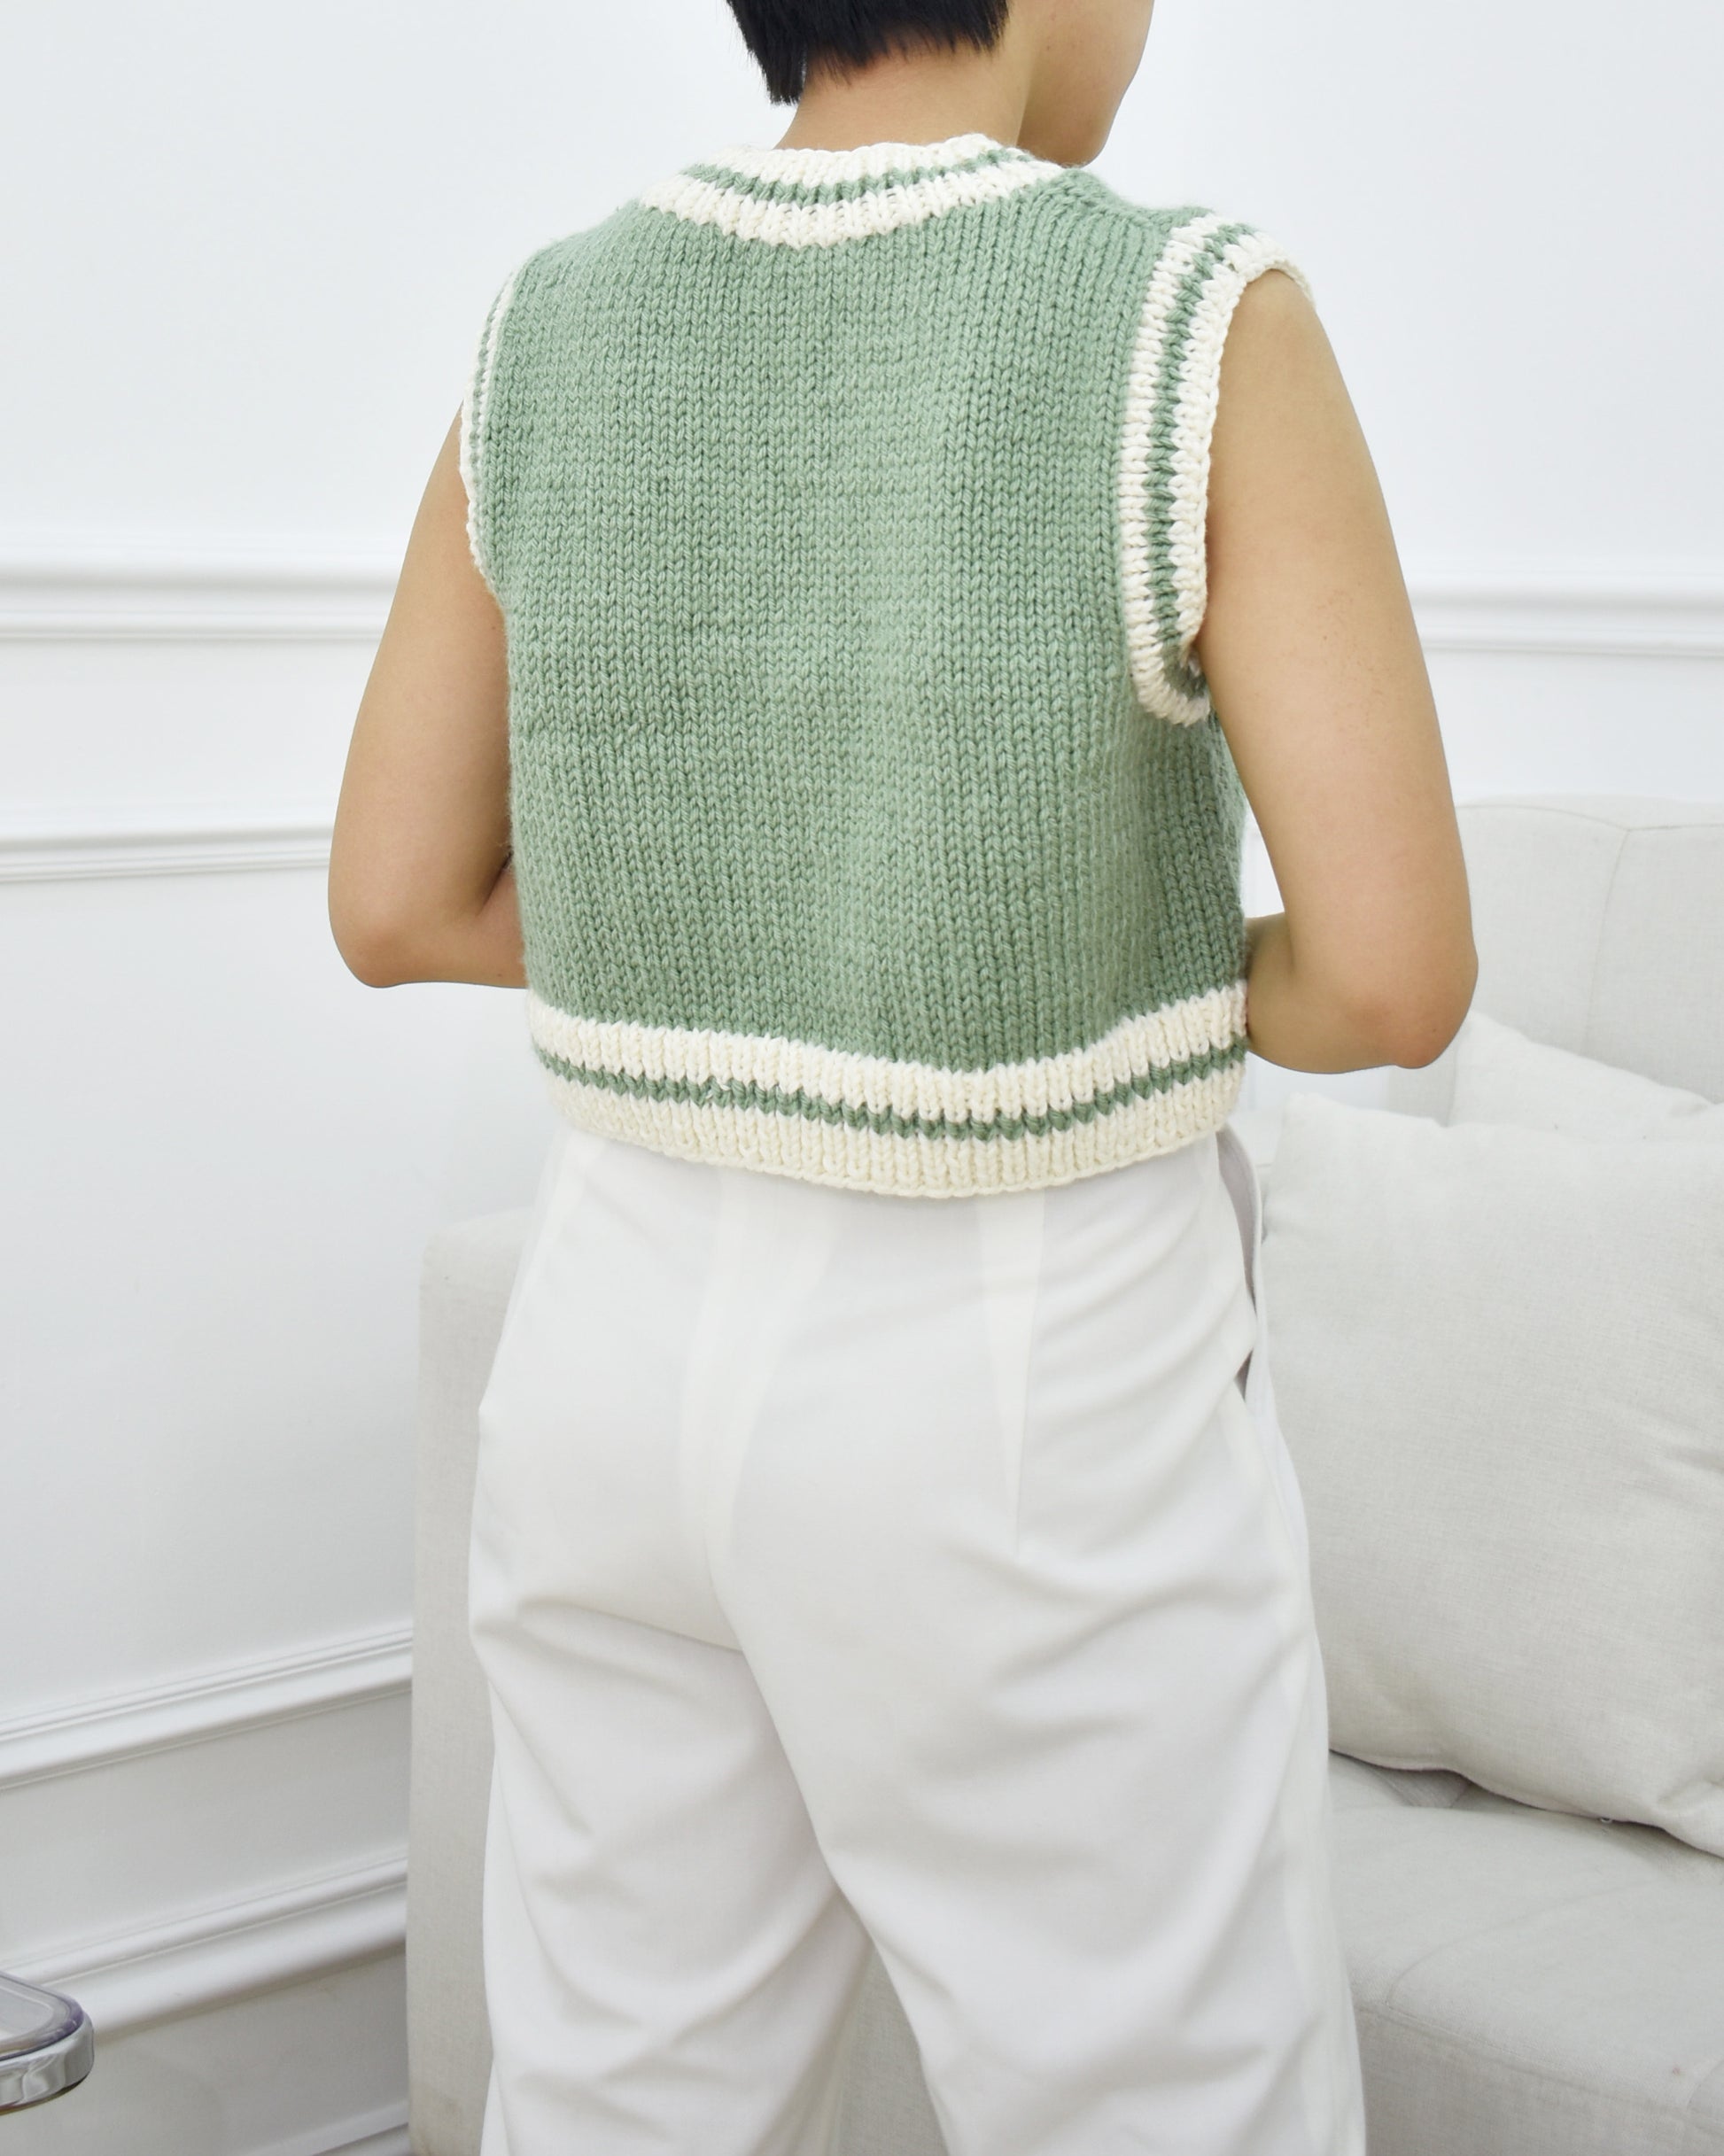 Vest No.13  Easy knitting chunky vest pattern – Daisy & Peace